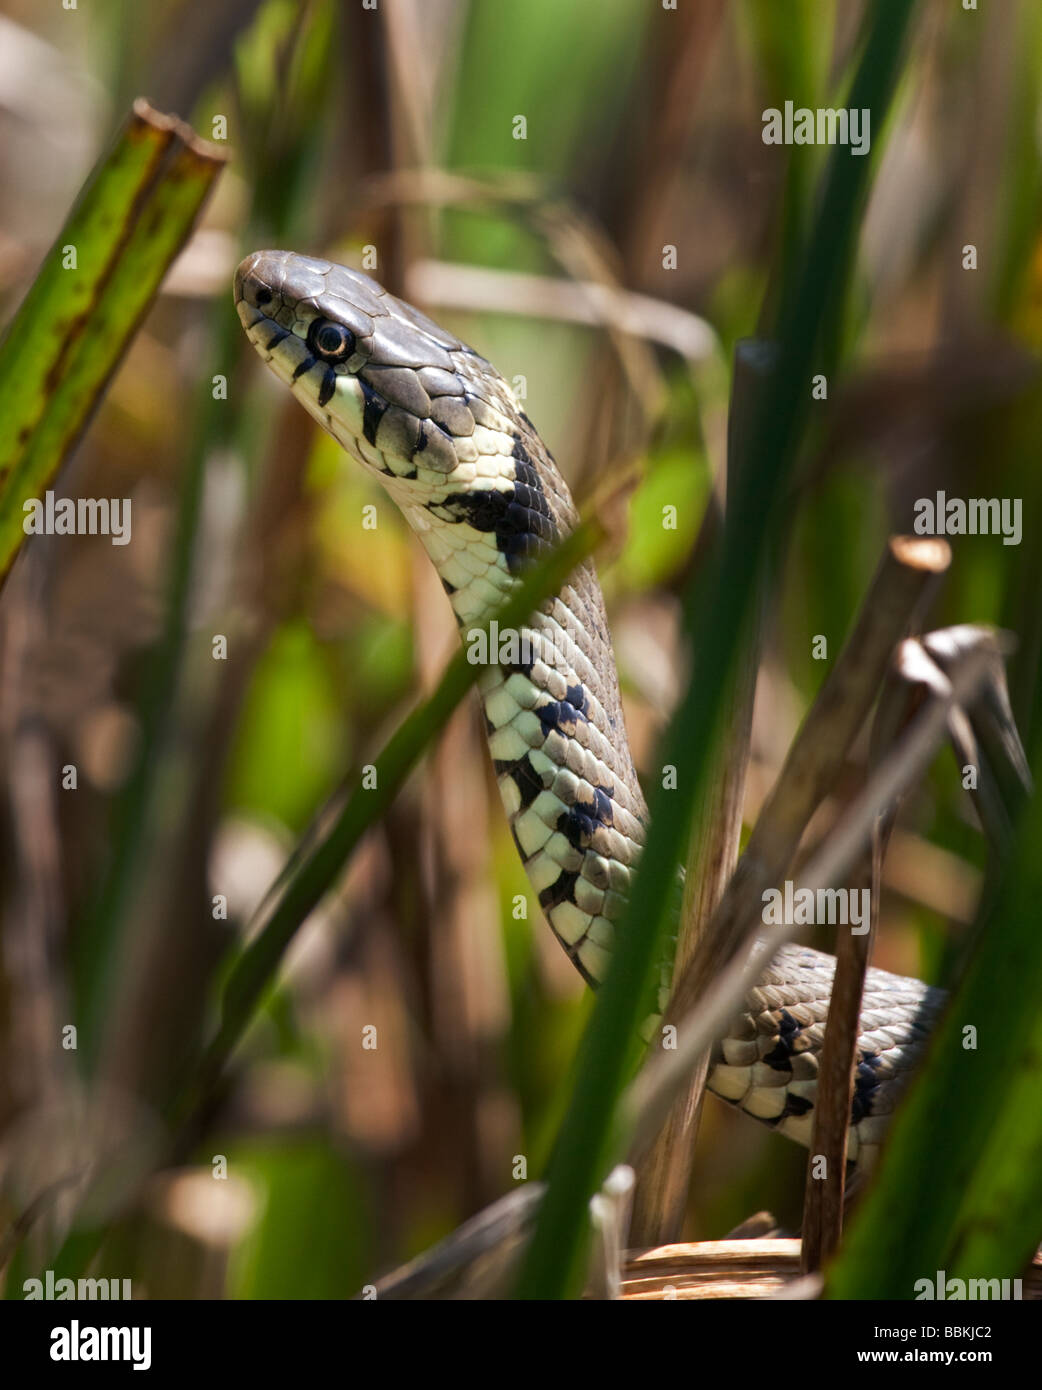 European Grass Snake ou serpent annelé (Natrix natrix), Royaume-Uni Banque D'Images